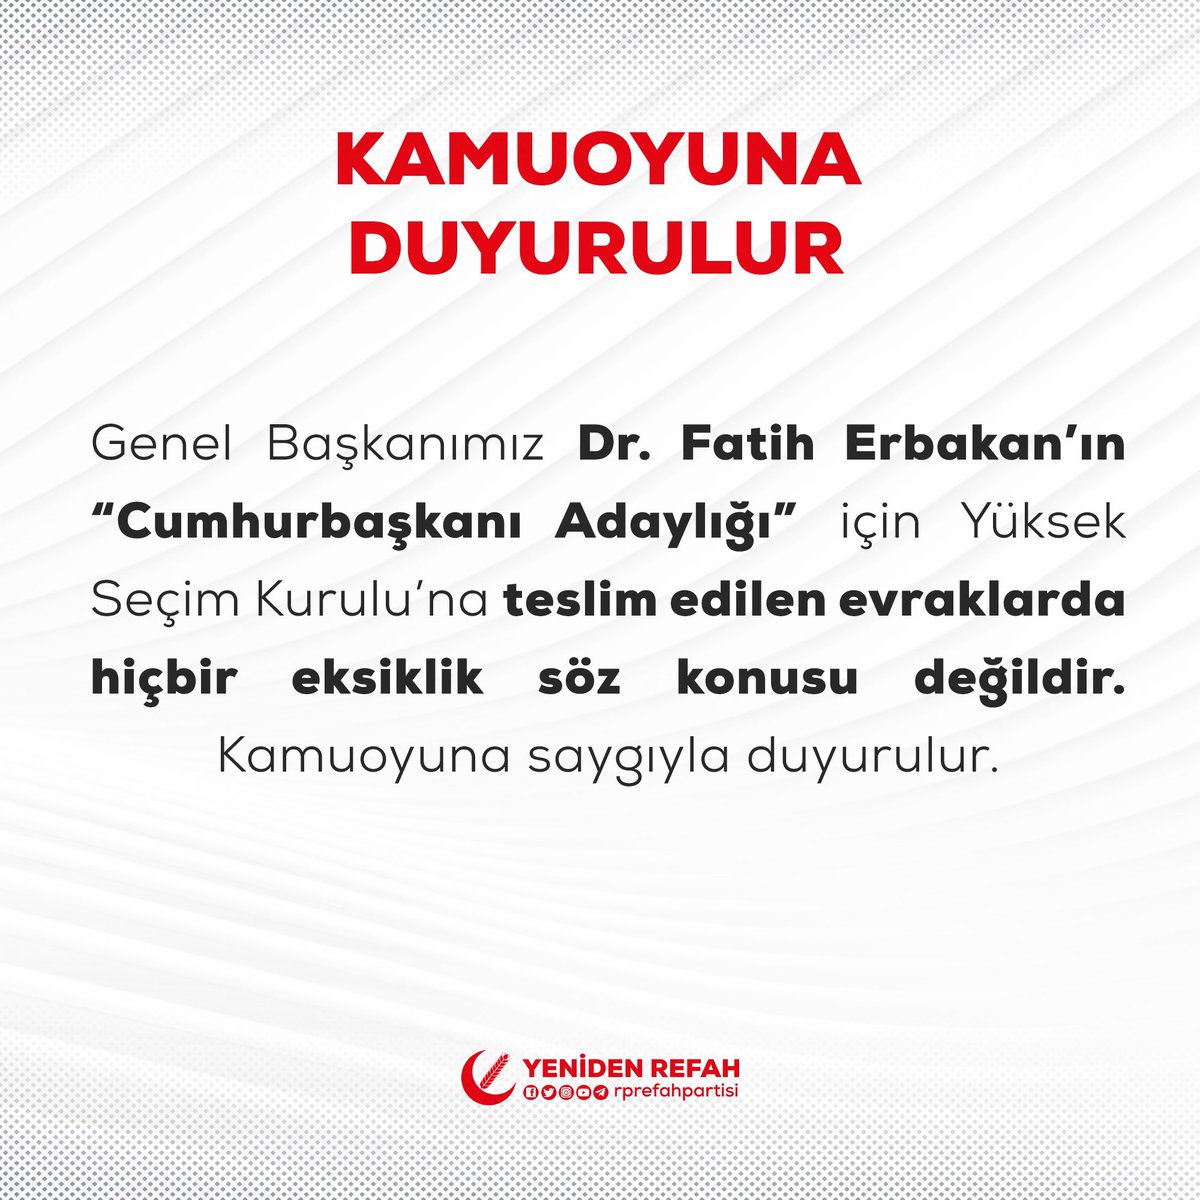 Genel Başkanımız Dr. Fatih Erbakan’ın “Cumhurbaşkanı Adaylığı” için Yüksek Seçim Kurulu’na teslim edilen evraklarda hiçbir eksiklik söz konusu değildir. Kamuoyuna saygıyla duyurulur.